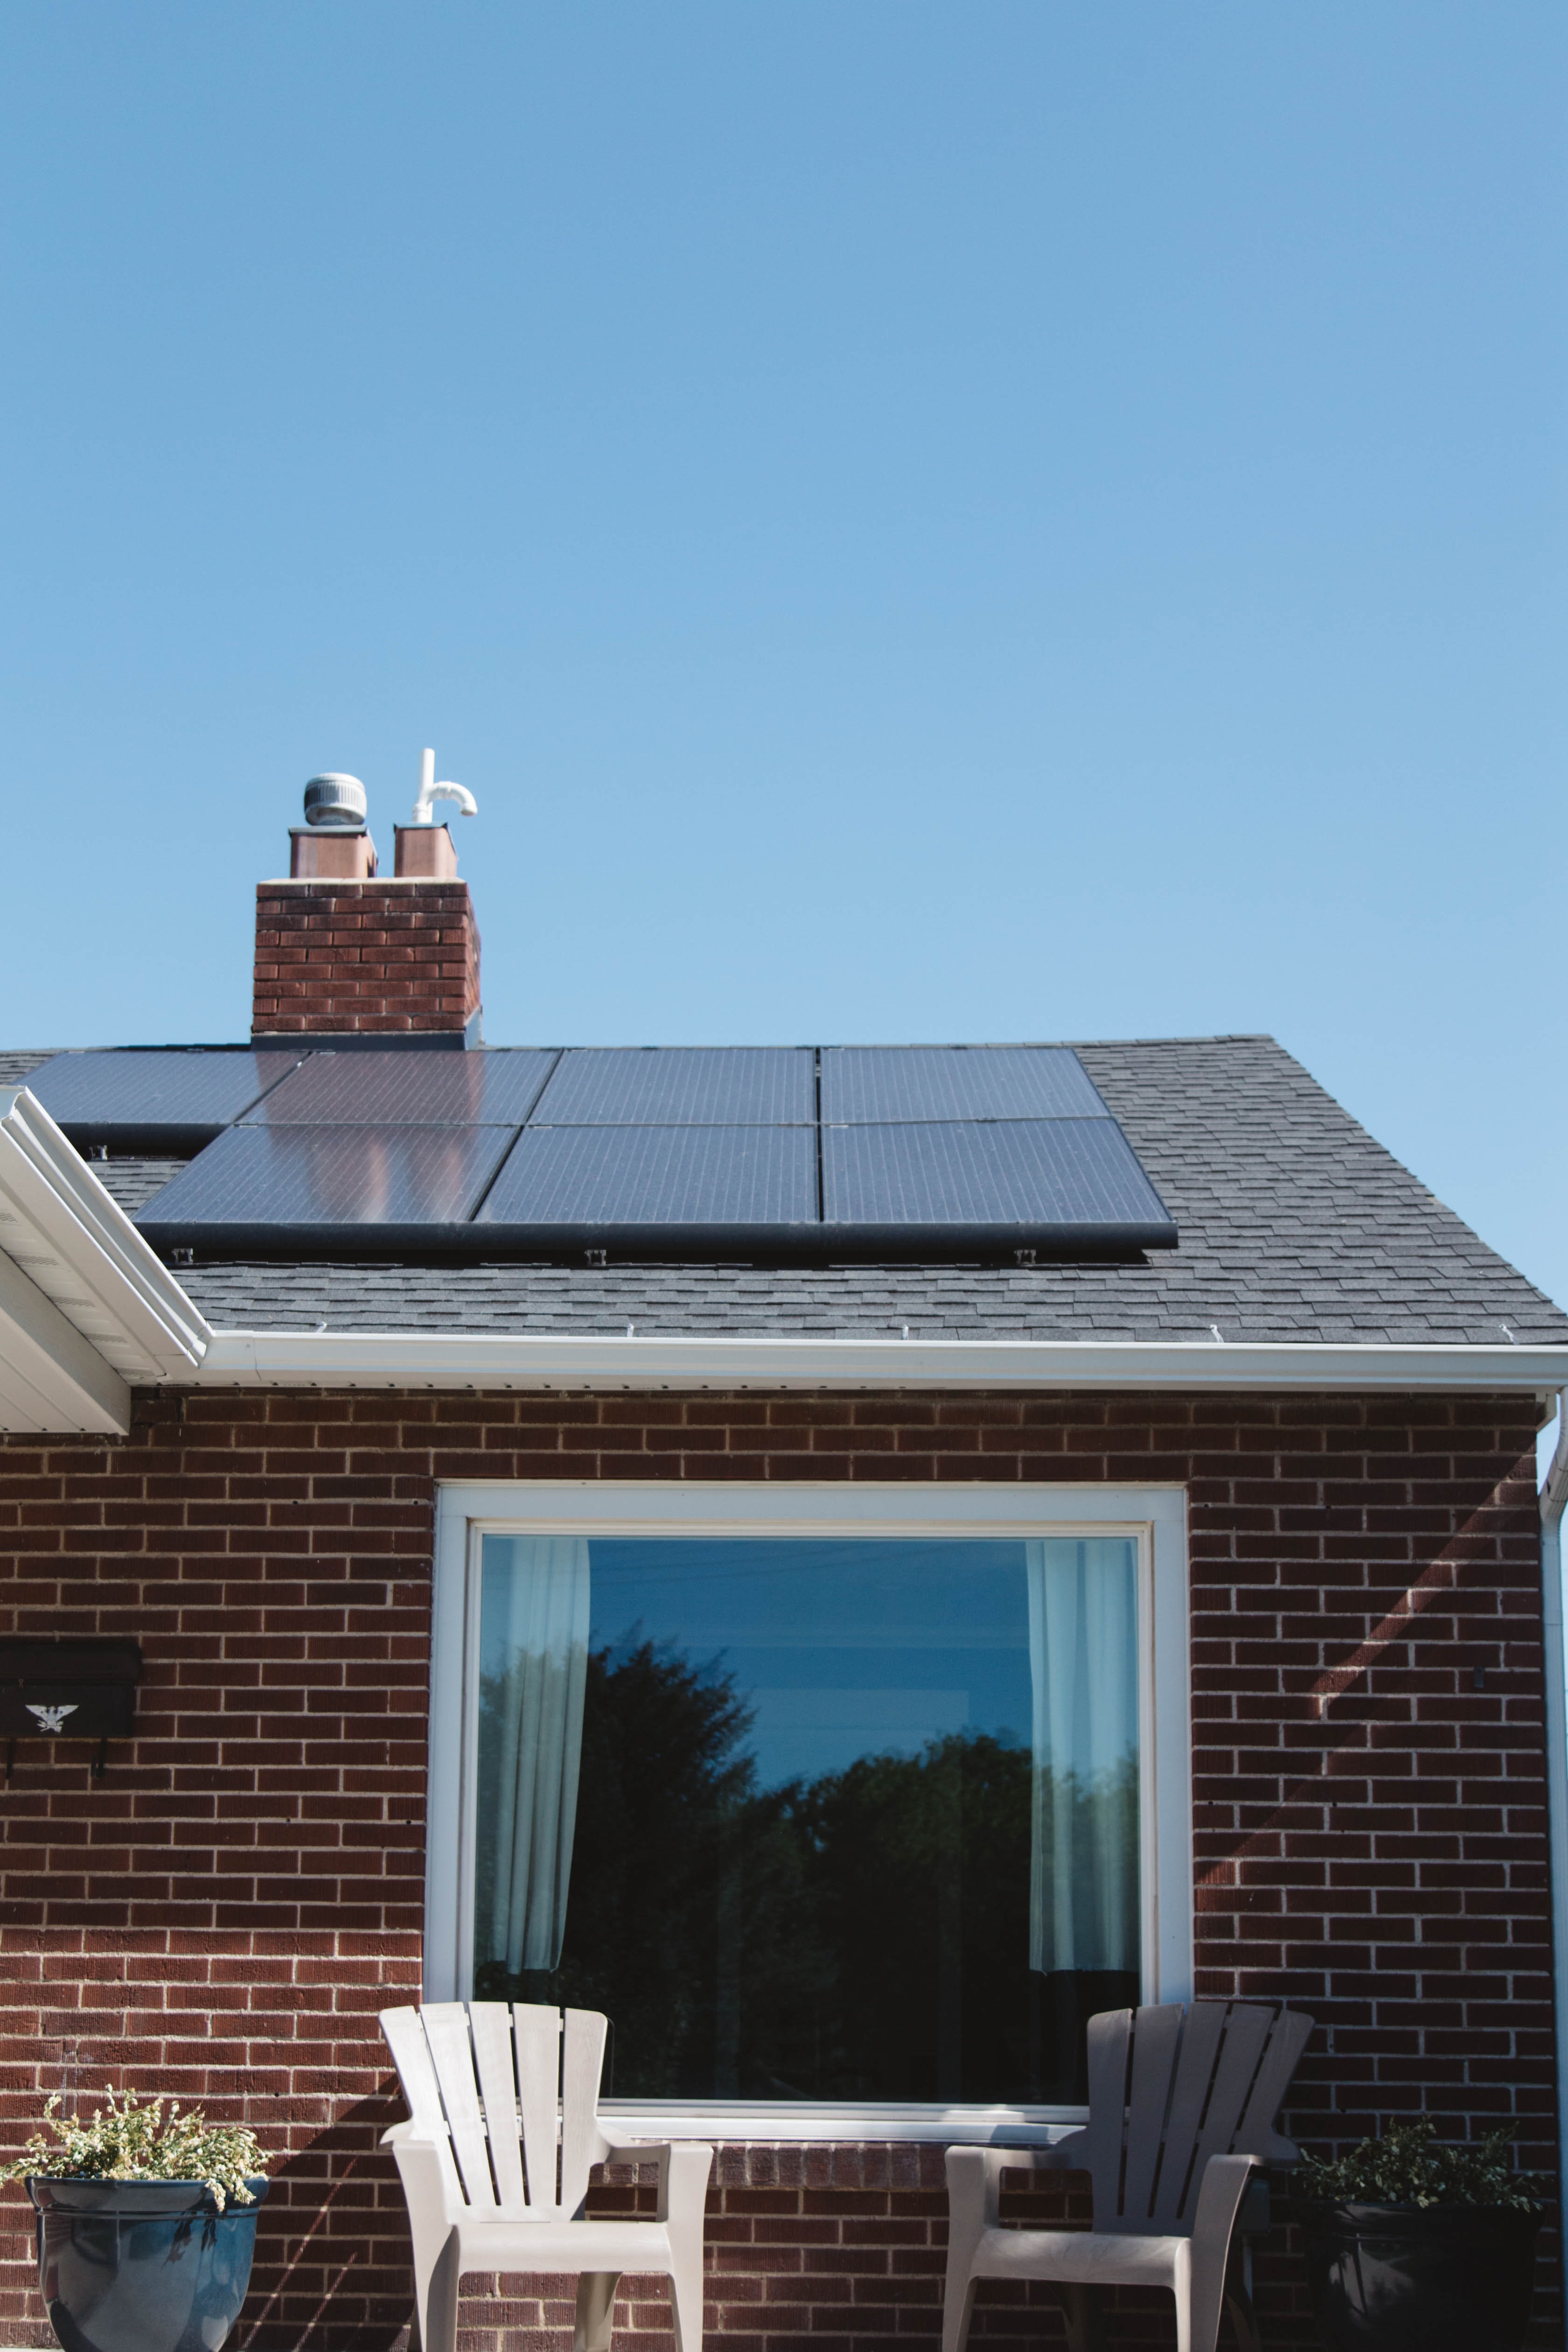 Impianto fotovoltaico su tetto casa